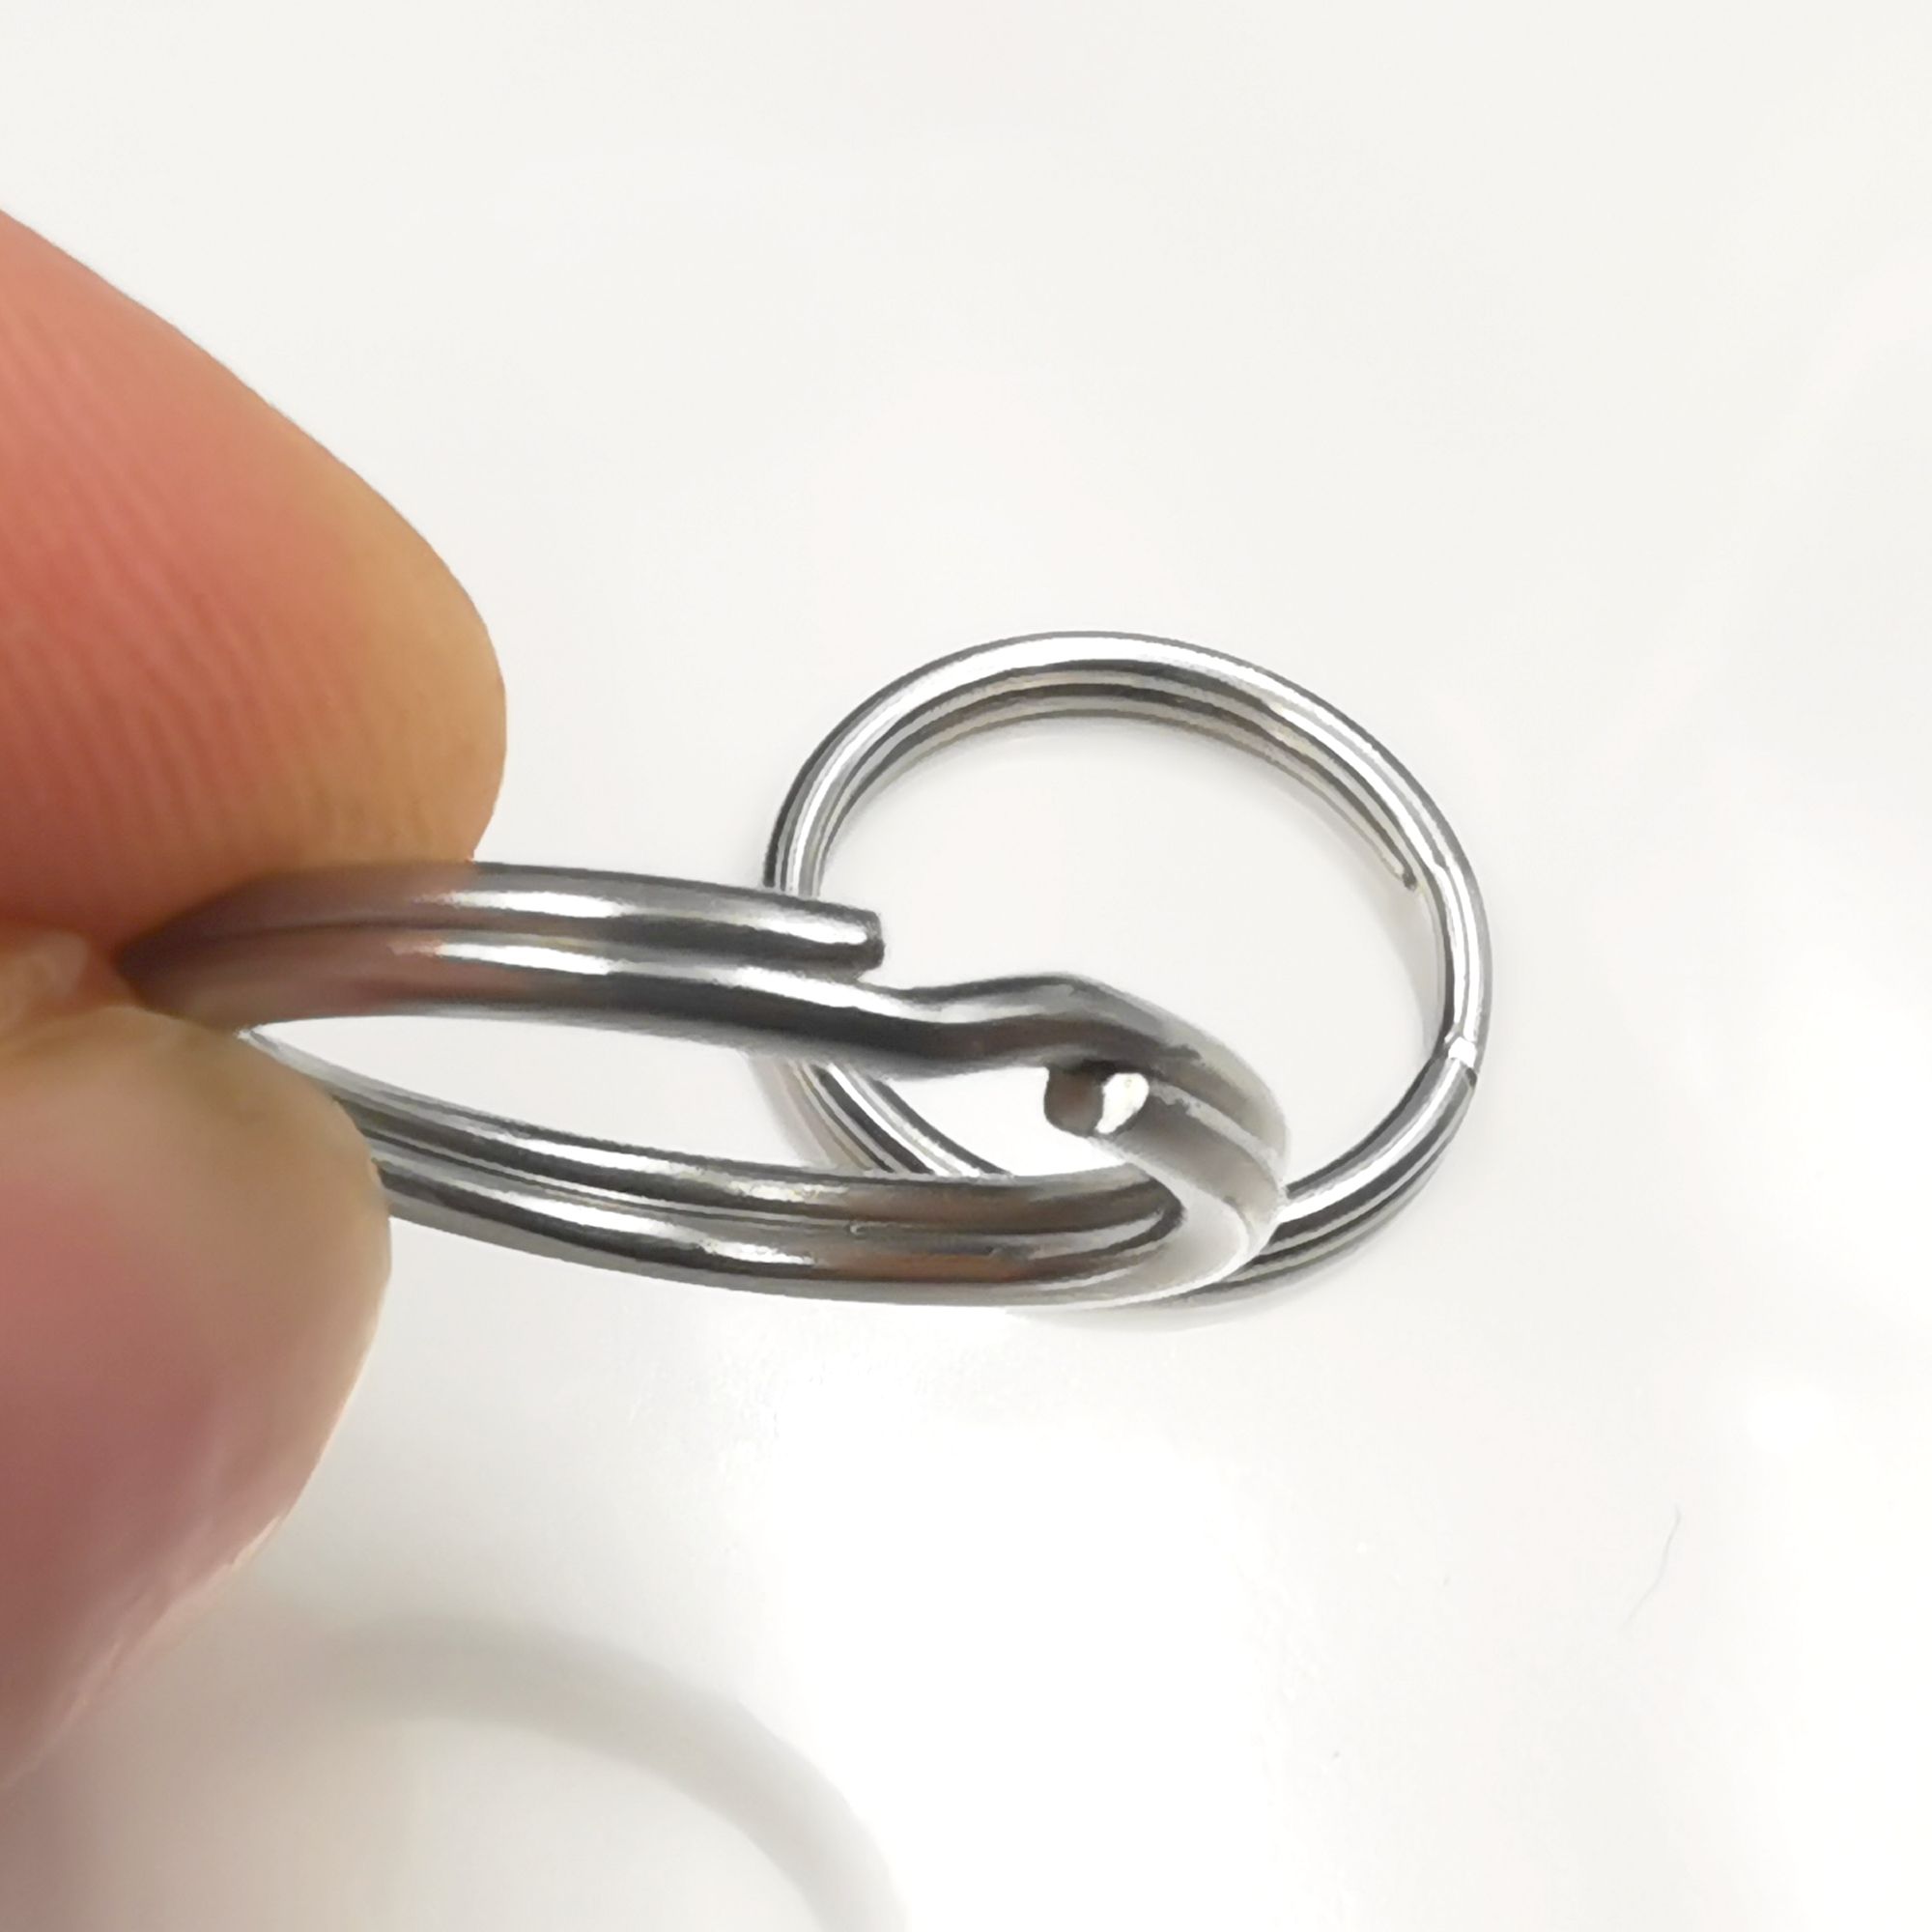 50pcs Flat Key Rings Metal Key Rings Diy Keychain Rings Round Key Rings  Flat O-shaped Rings